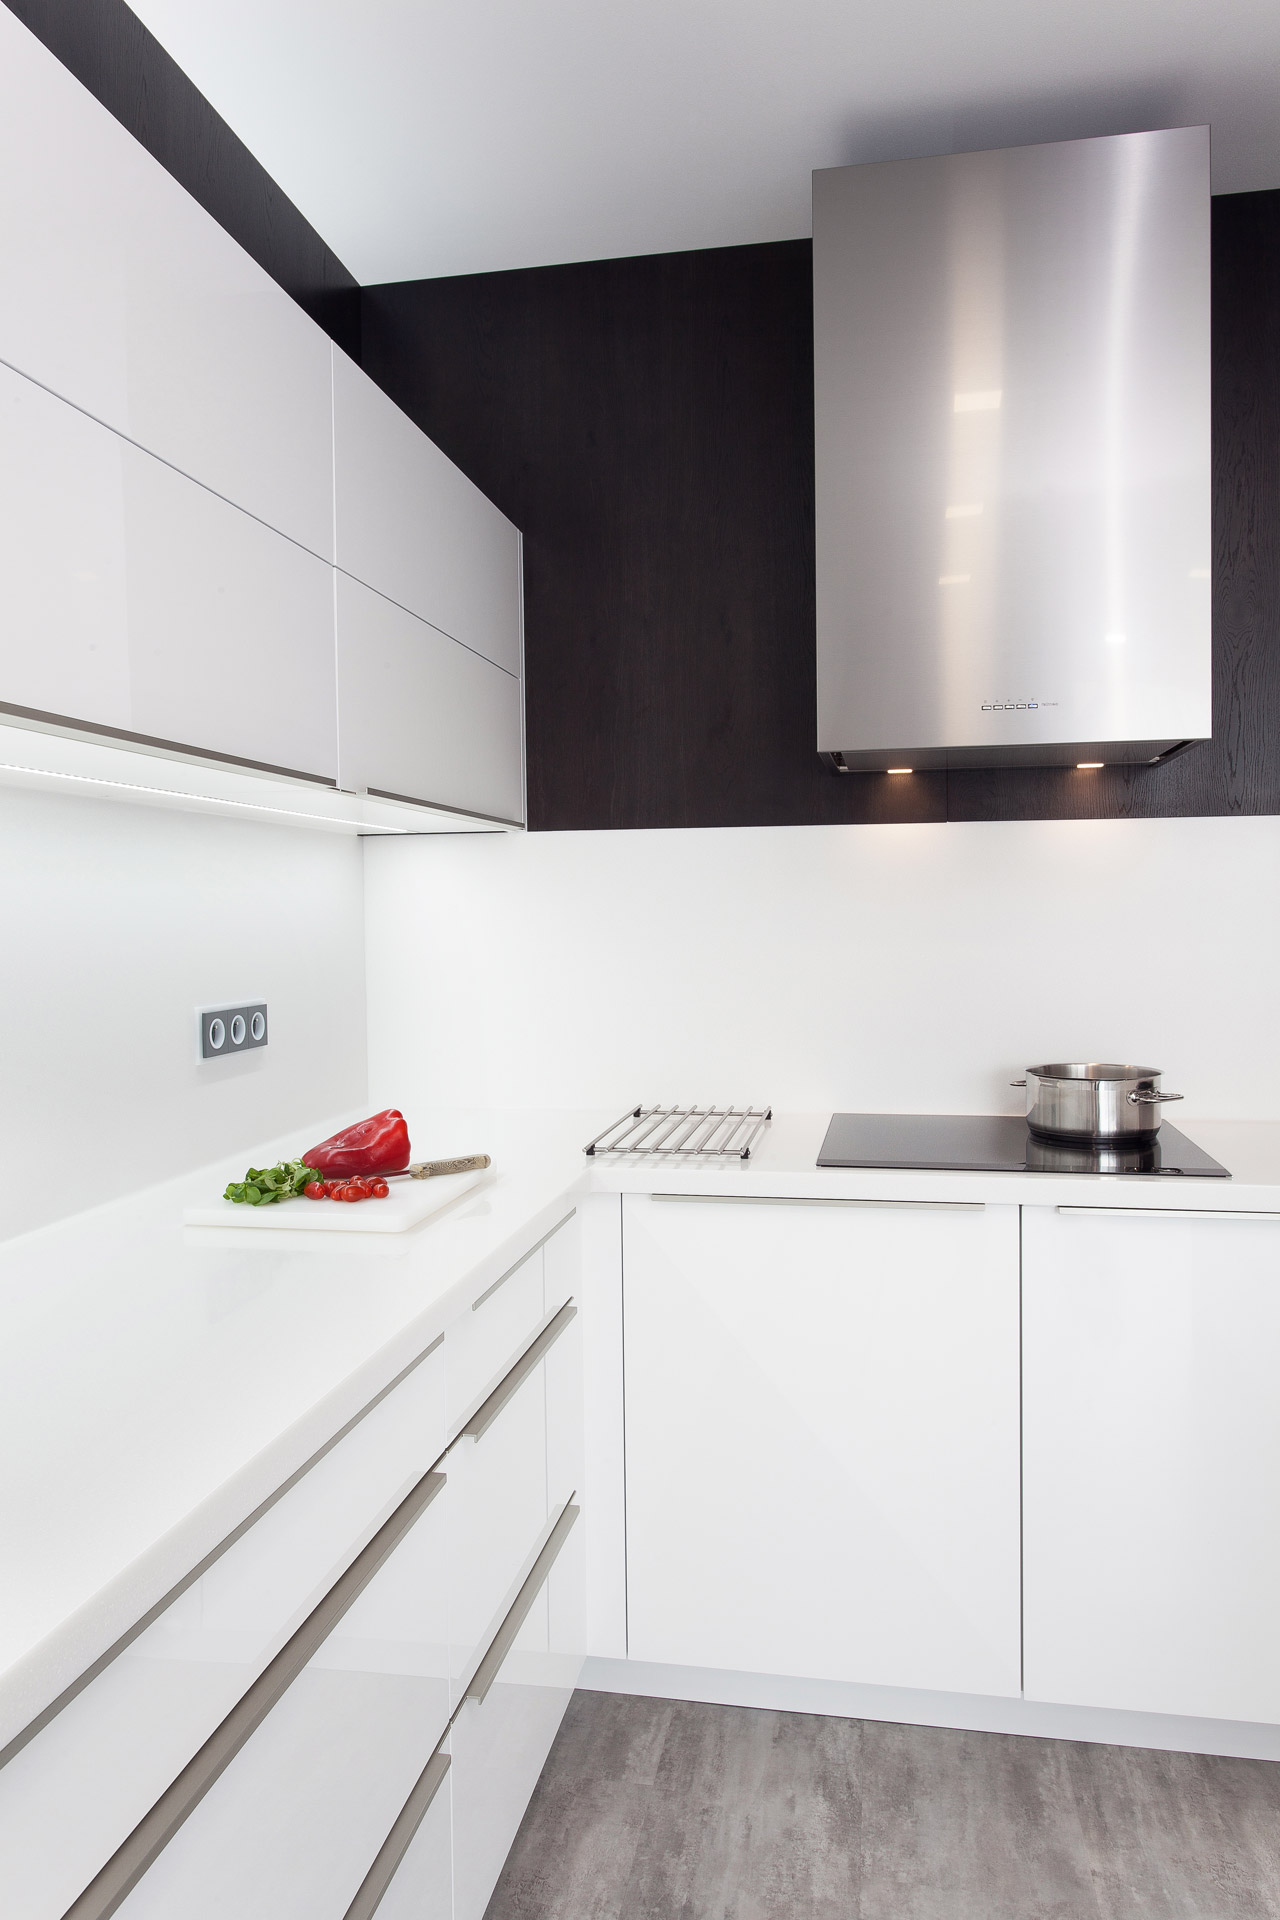 Hanák nábytek Ukázka realizace Moderní kuchyně Bílá kuchyně